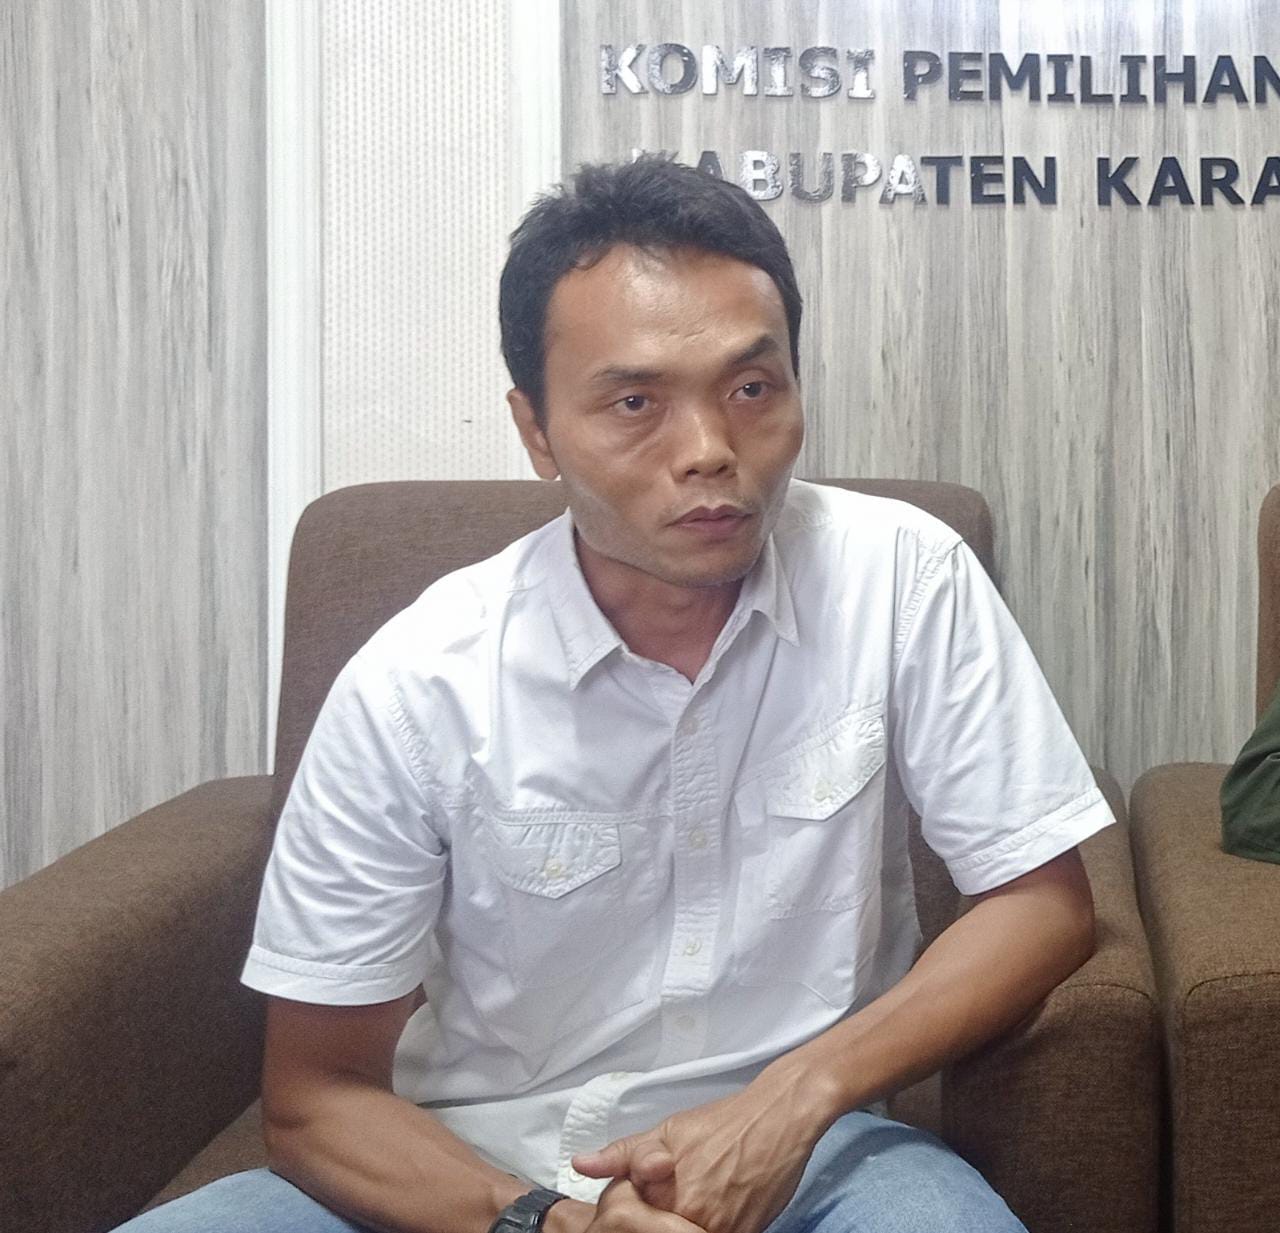 Ketua KPU Karawang Mundur, Miftah Farid: Hasil Istikharah